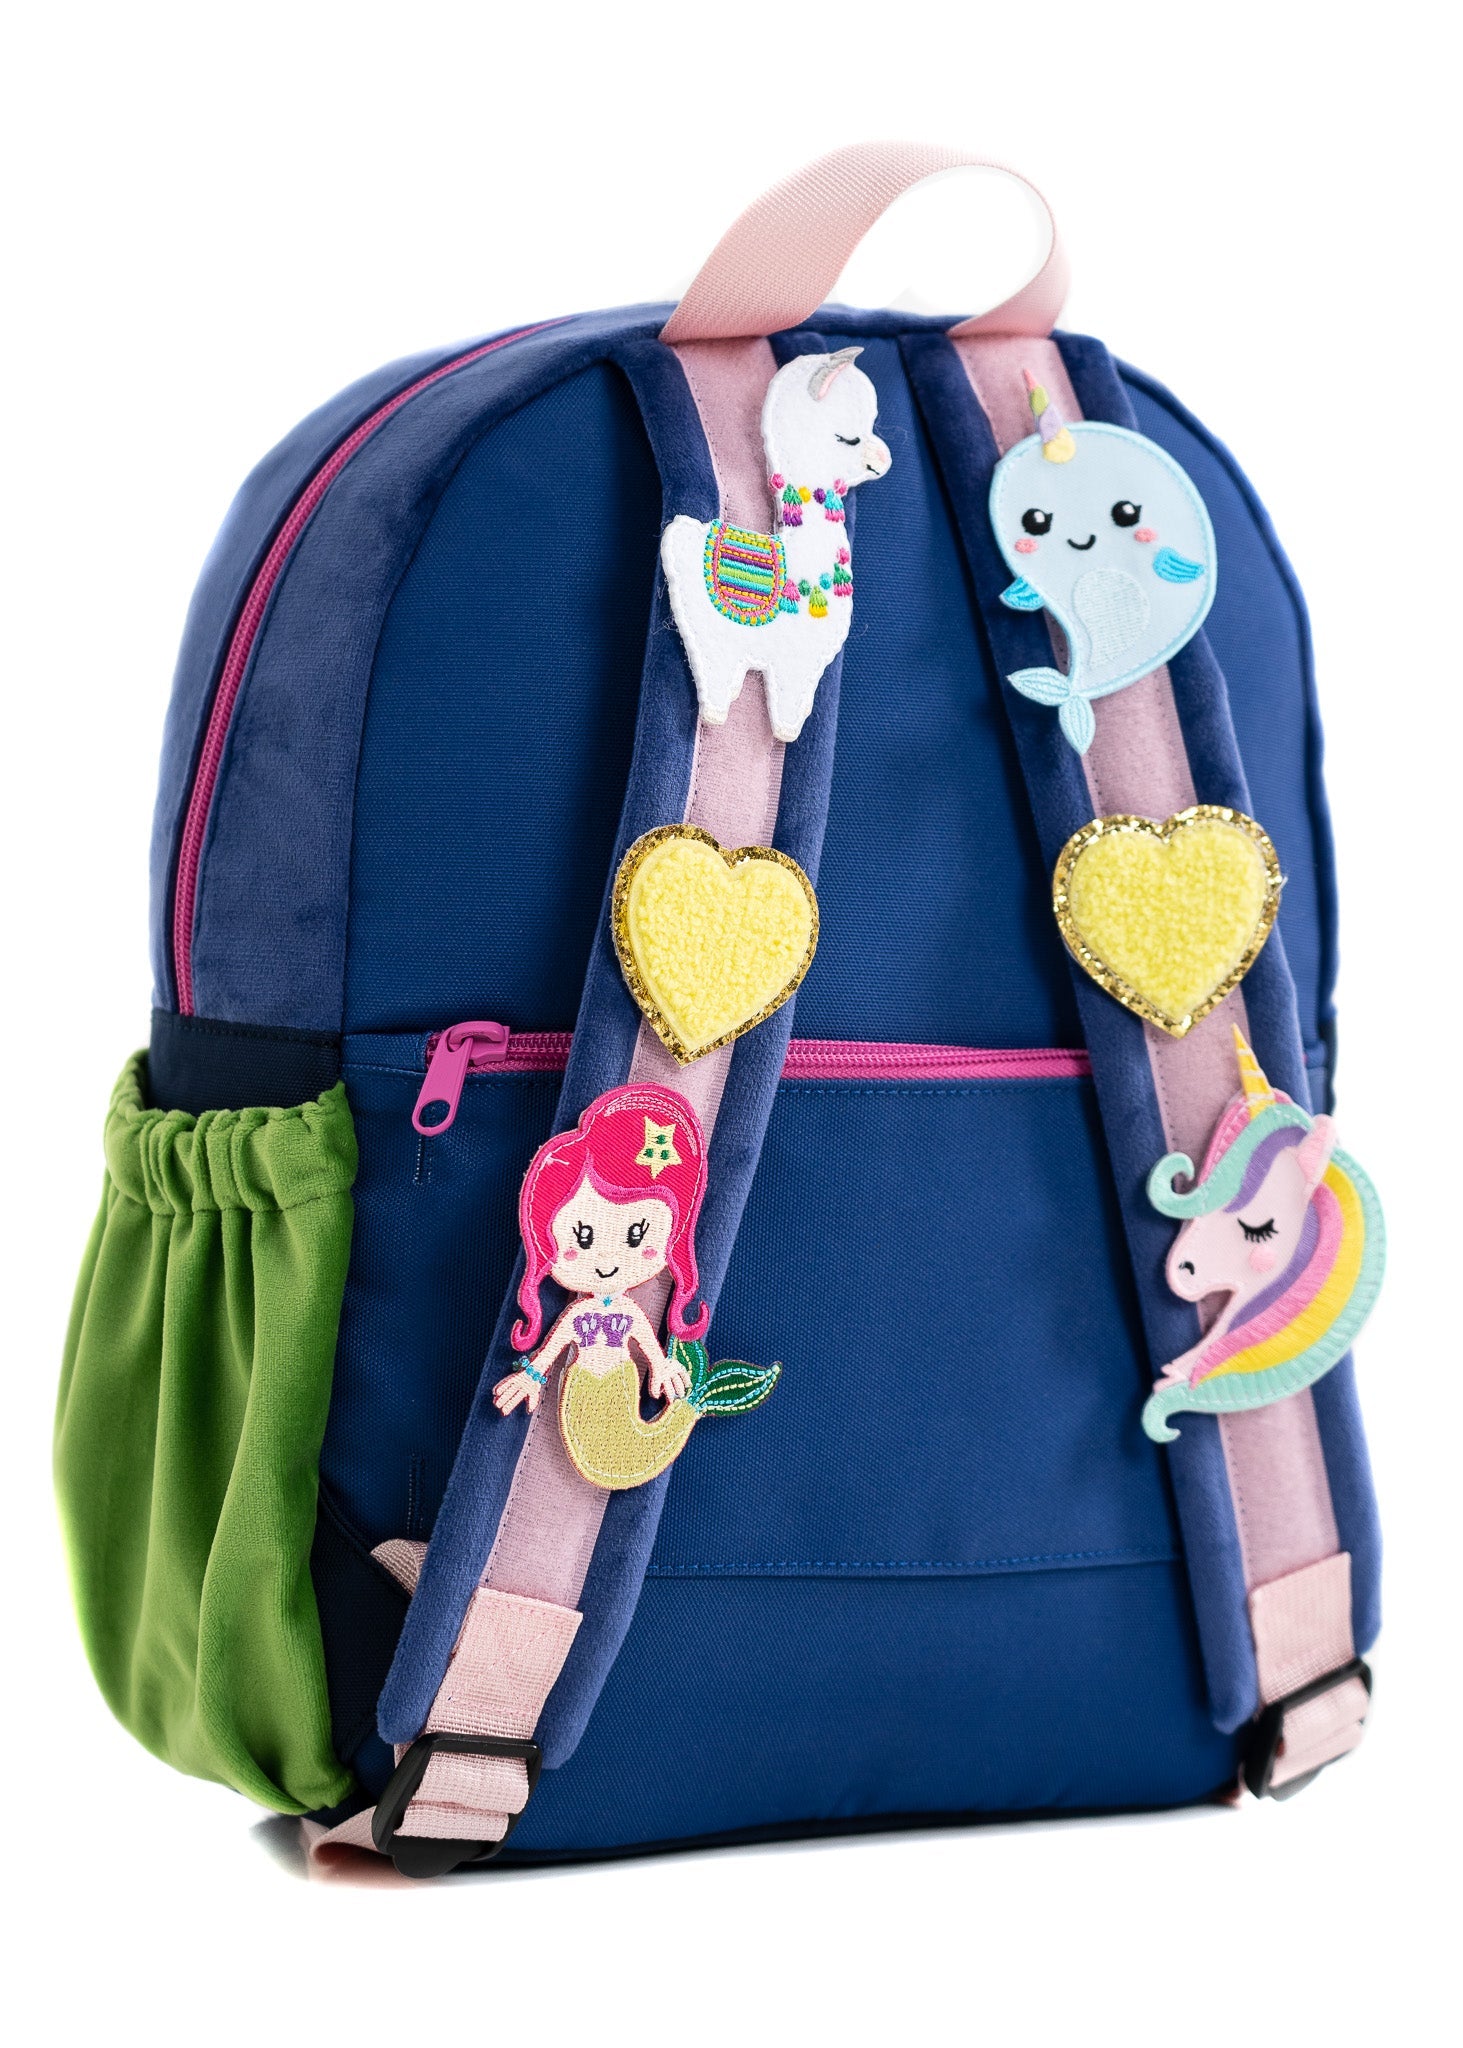 Hook & Loop Lux Kids Backpack - Cobalt / Magenta